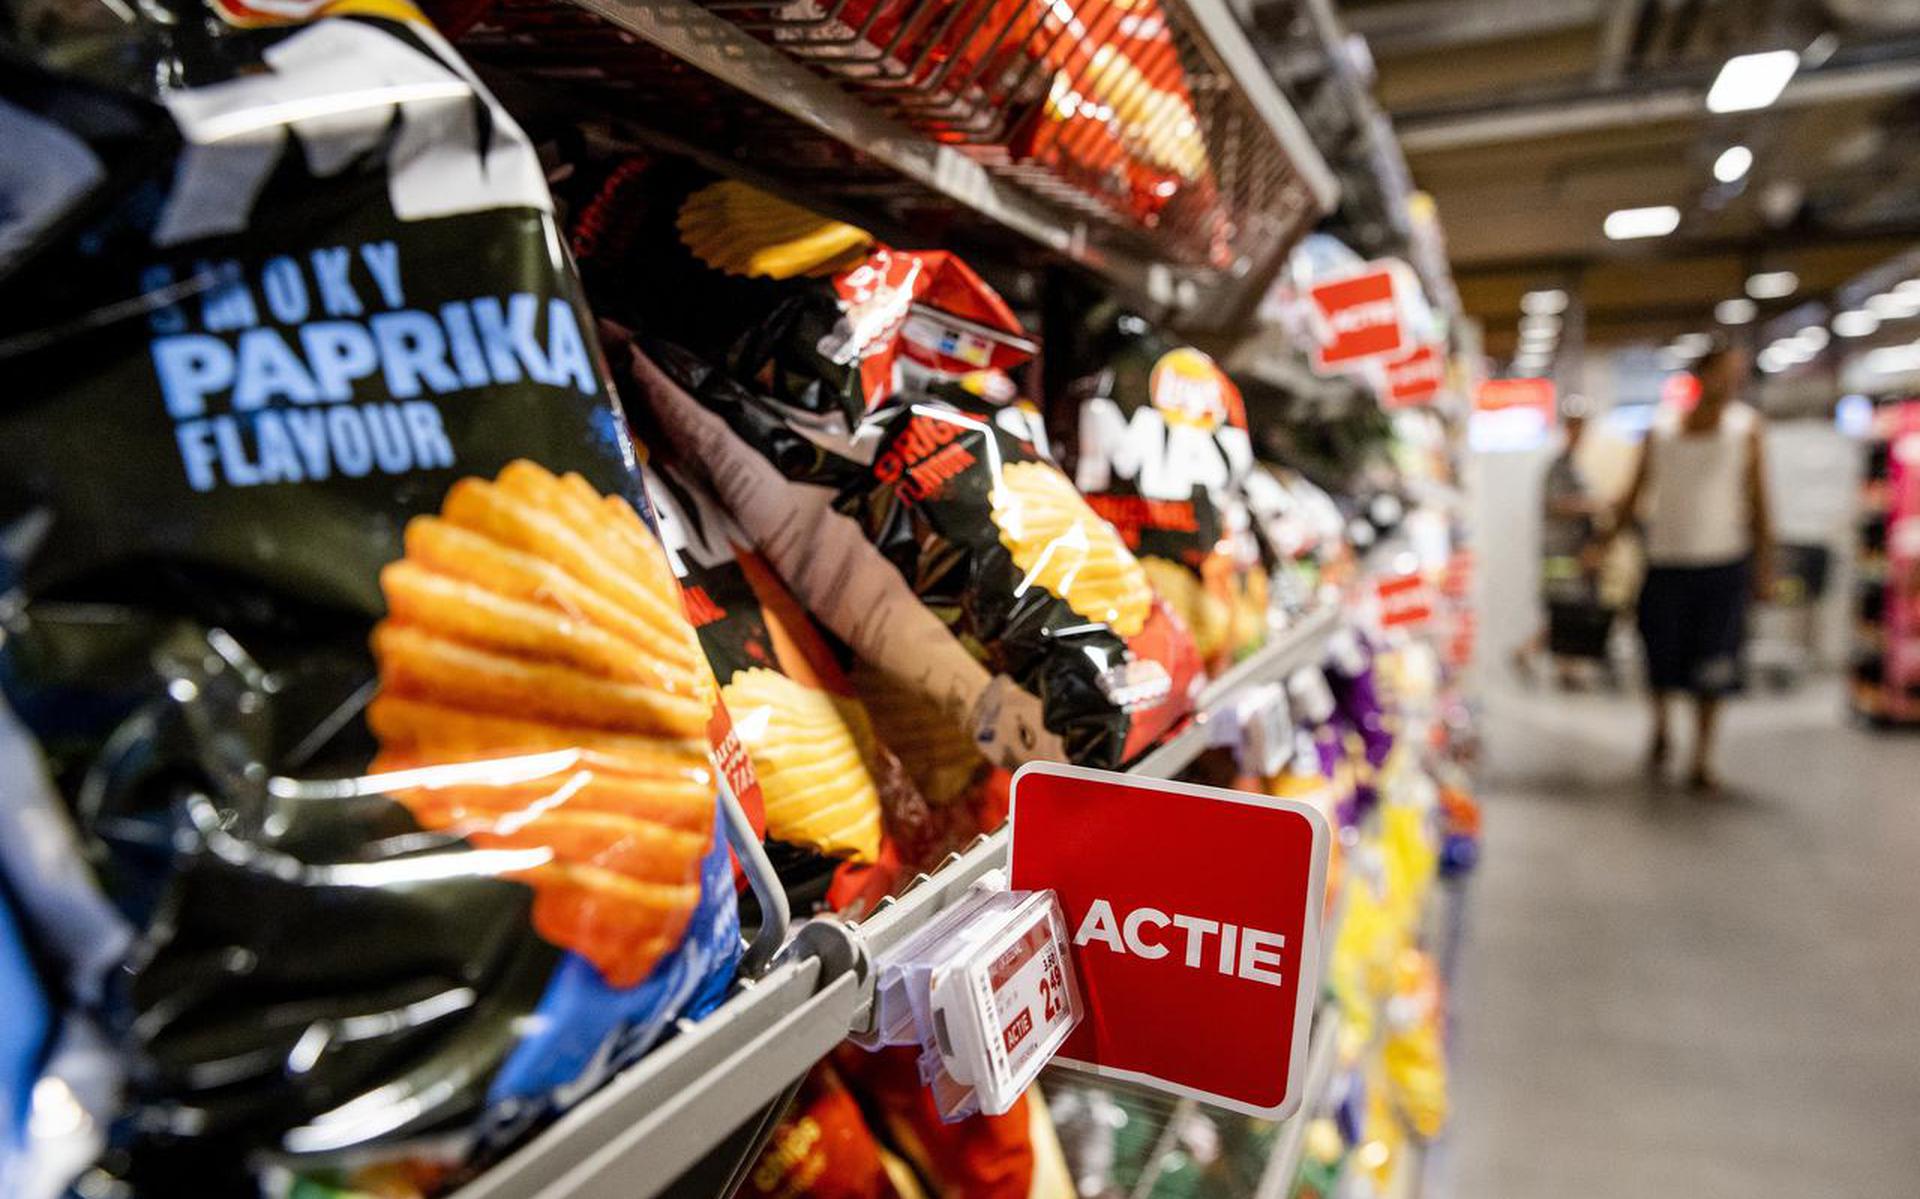 ‘In de supermarkten blijven de prijzen zelfs stijgen.’